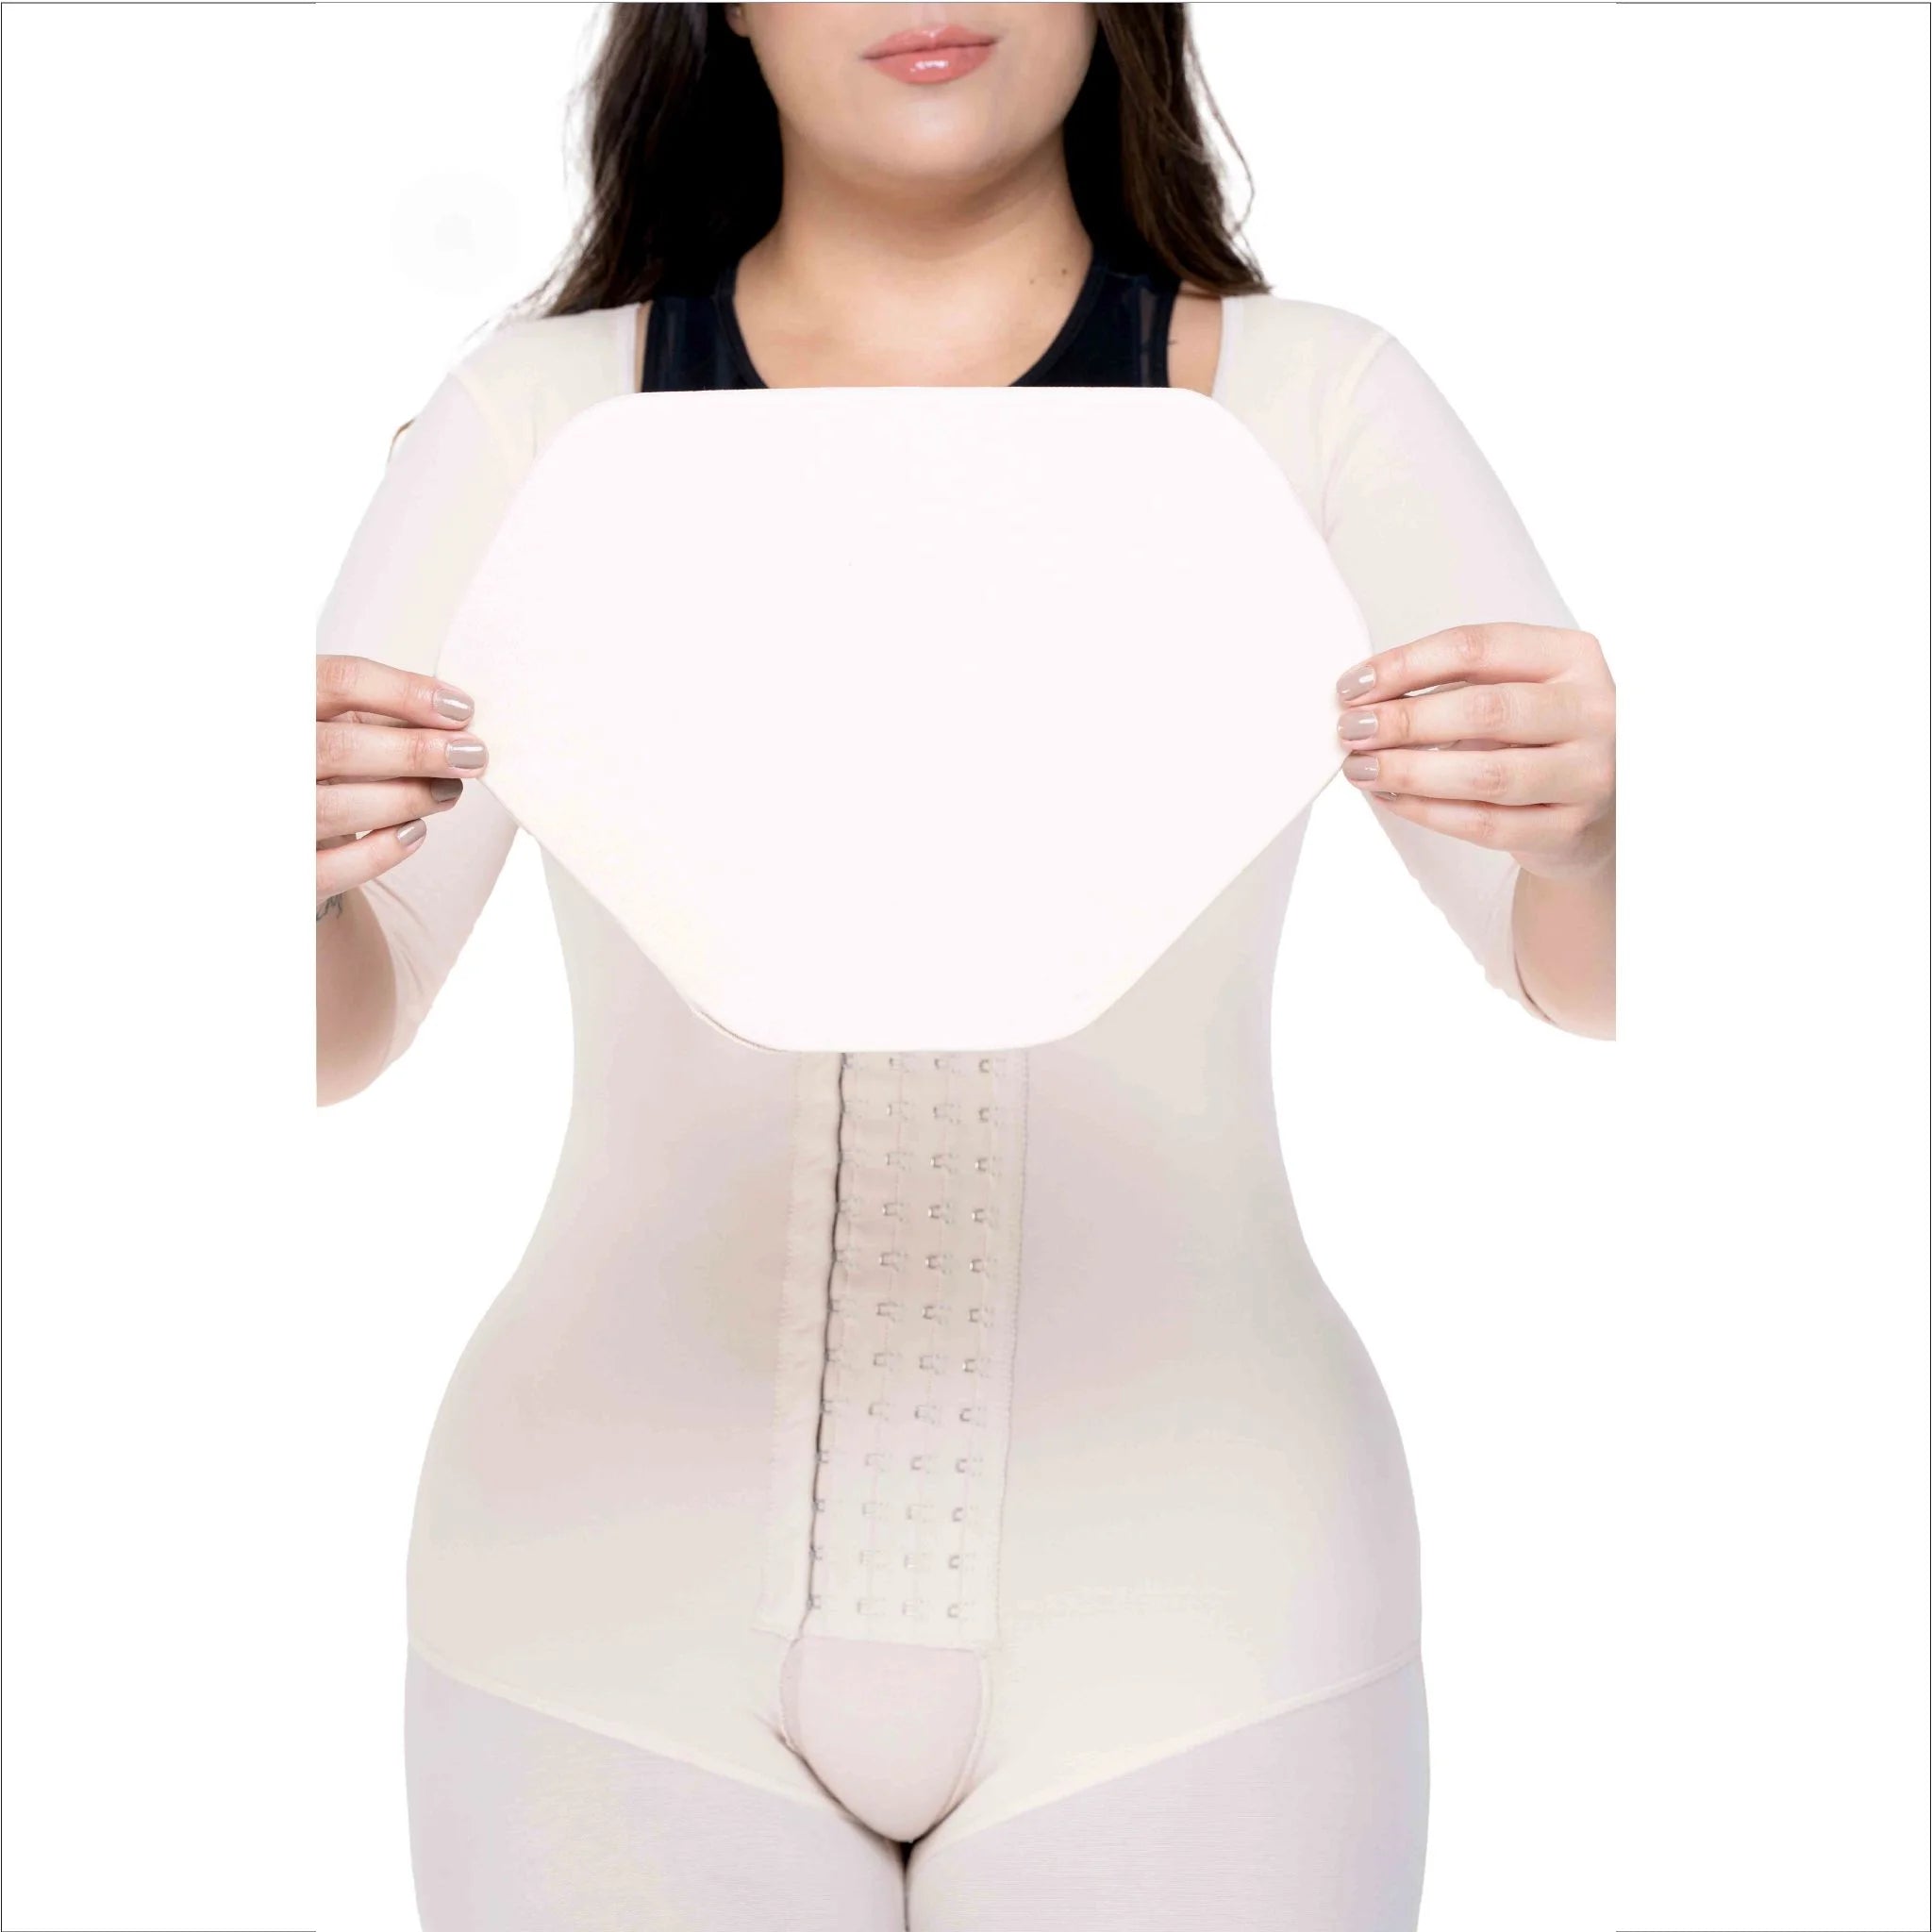 Women post surgery garment - AB - HK Surgical - S / L / XL